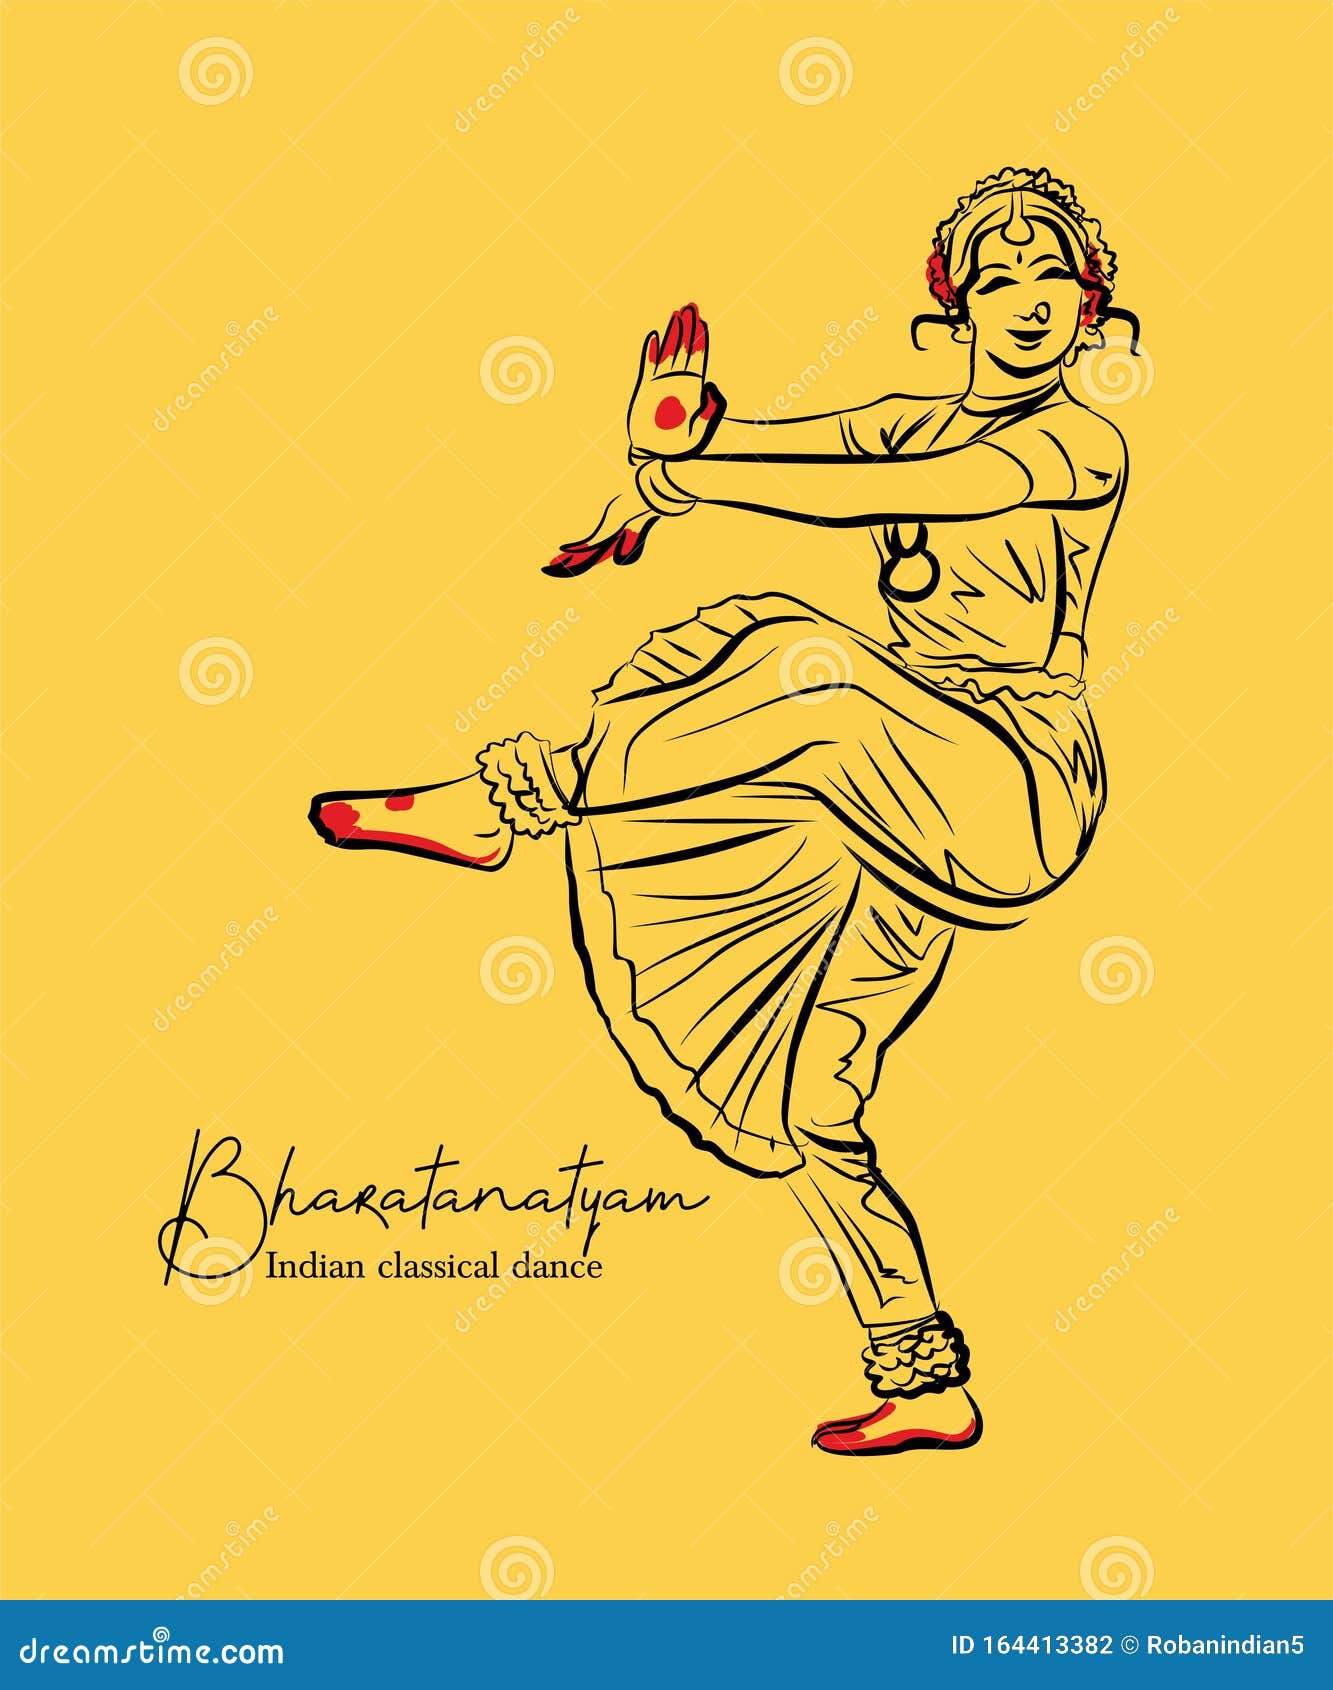 1,667 Indian Dance Sketch Images, Stock Photos & Vectors | Shutterstock